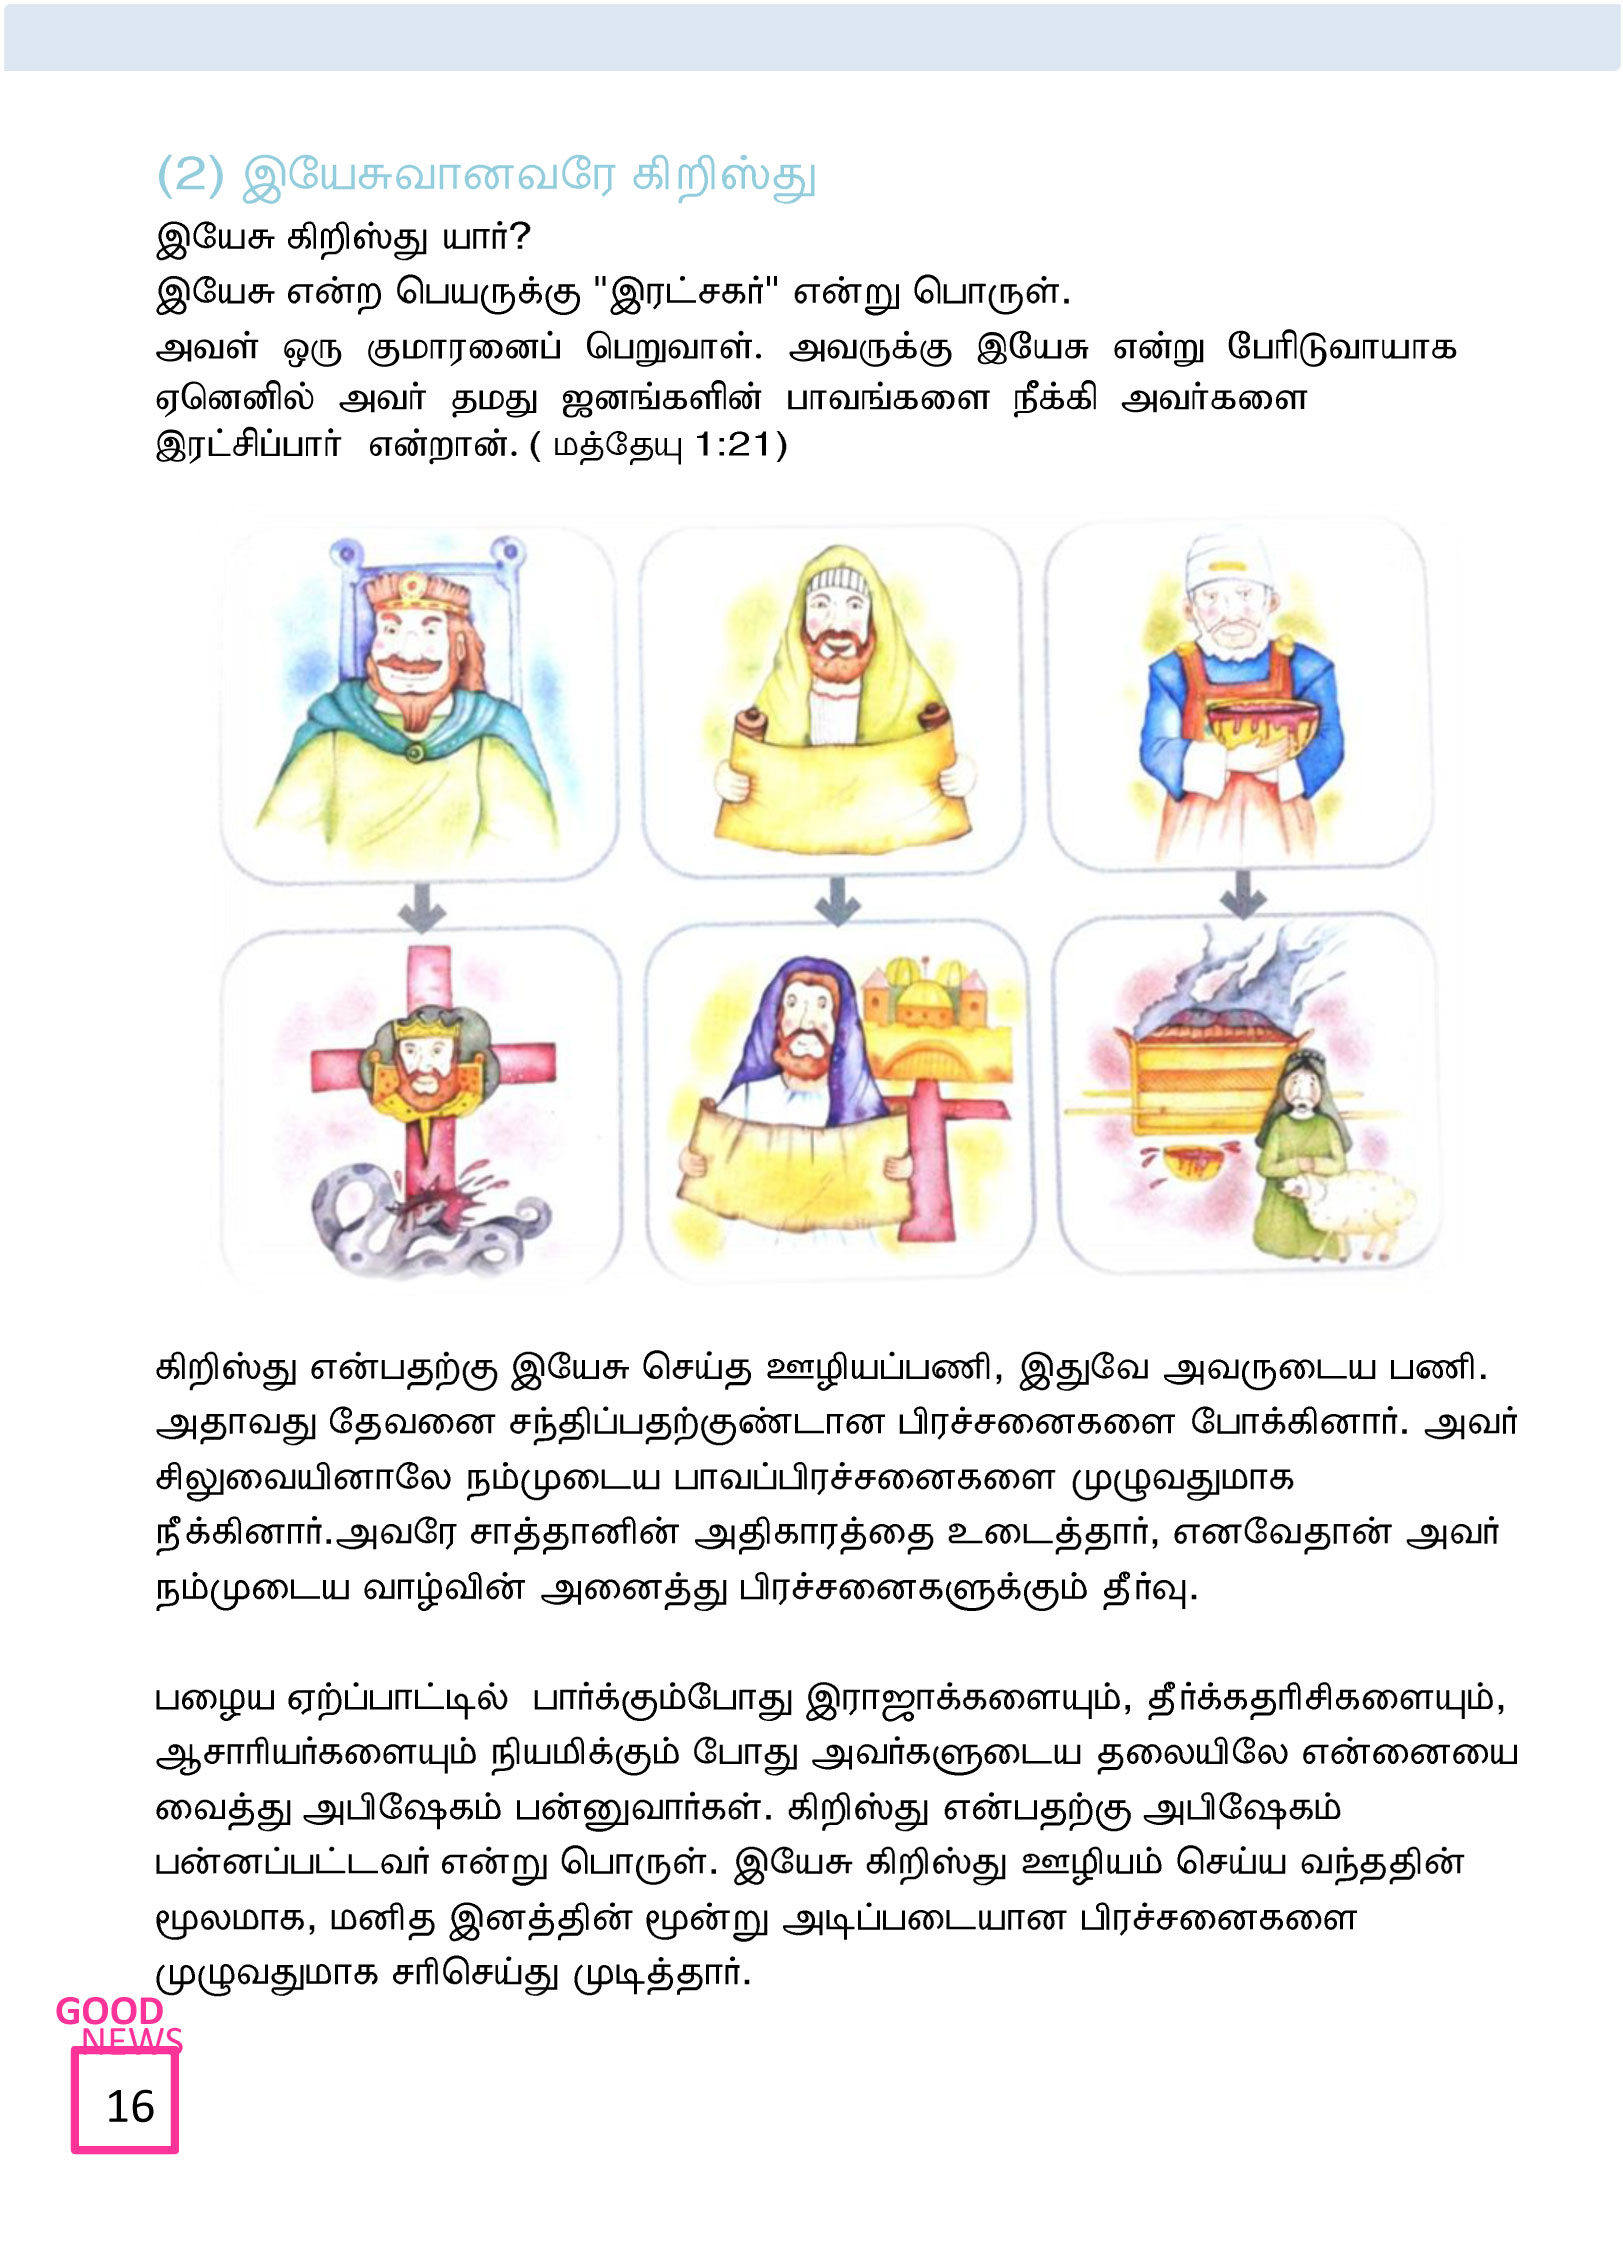 Tamil-Evangelism-Book-Pdf-3-16.jpg